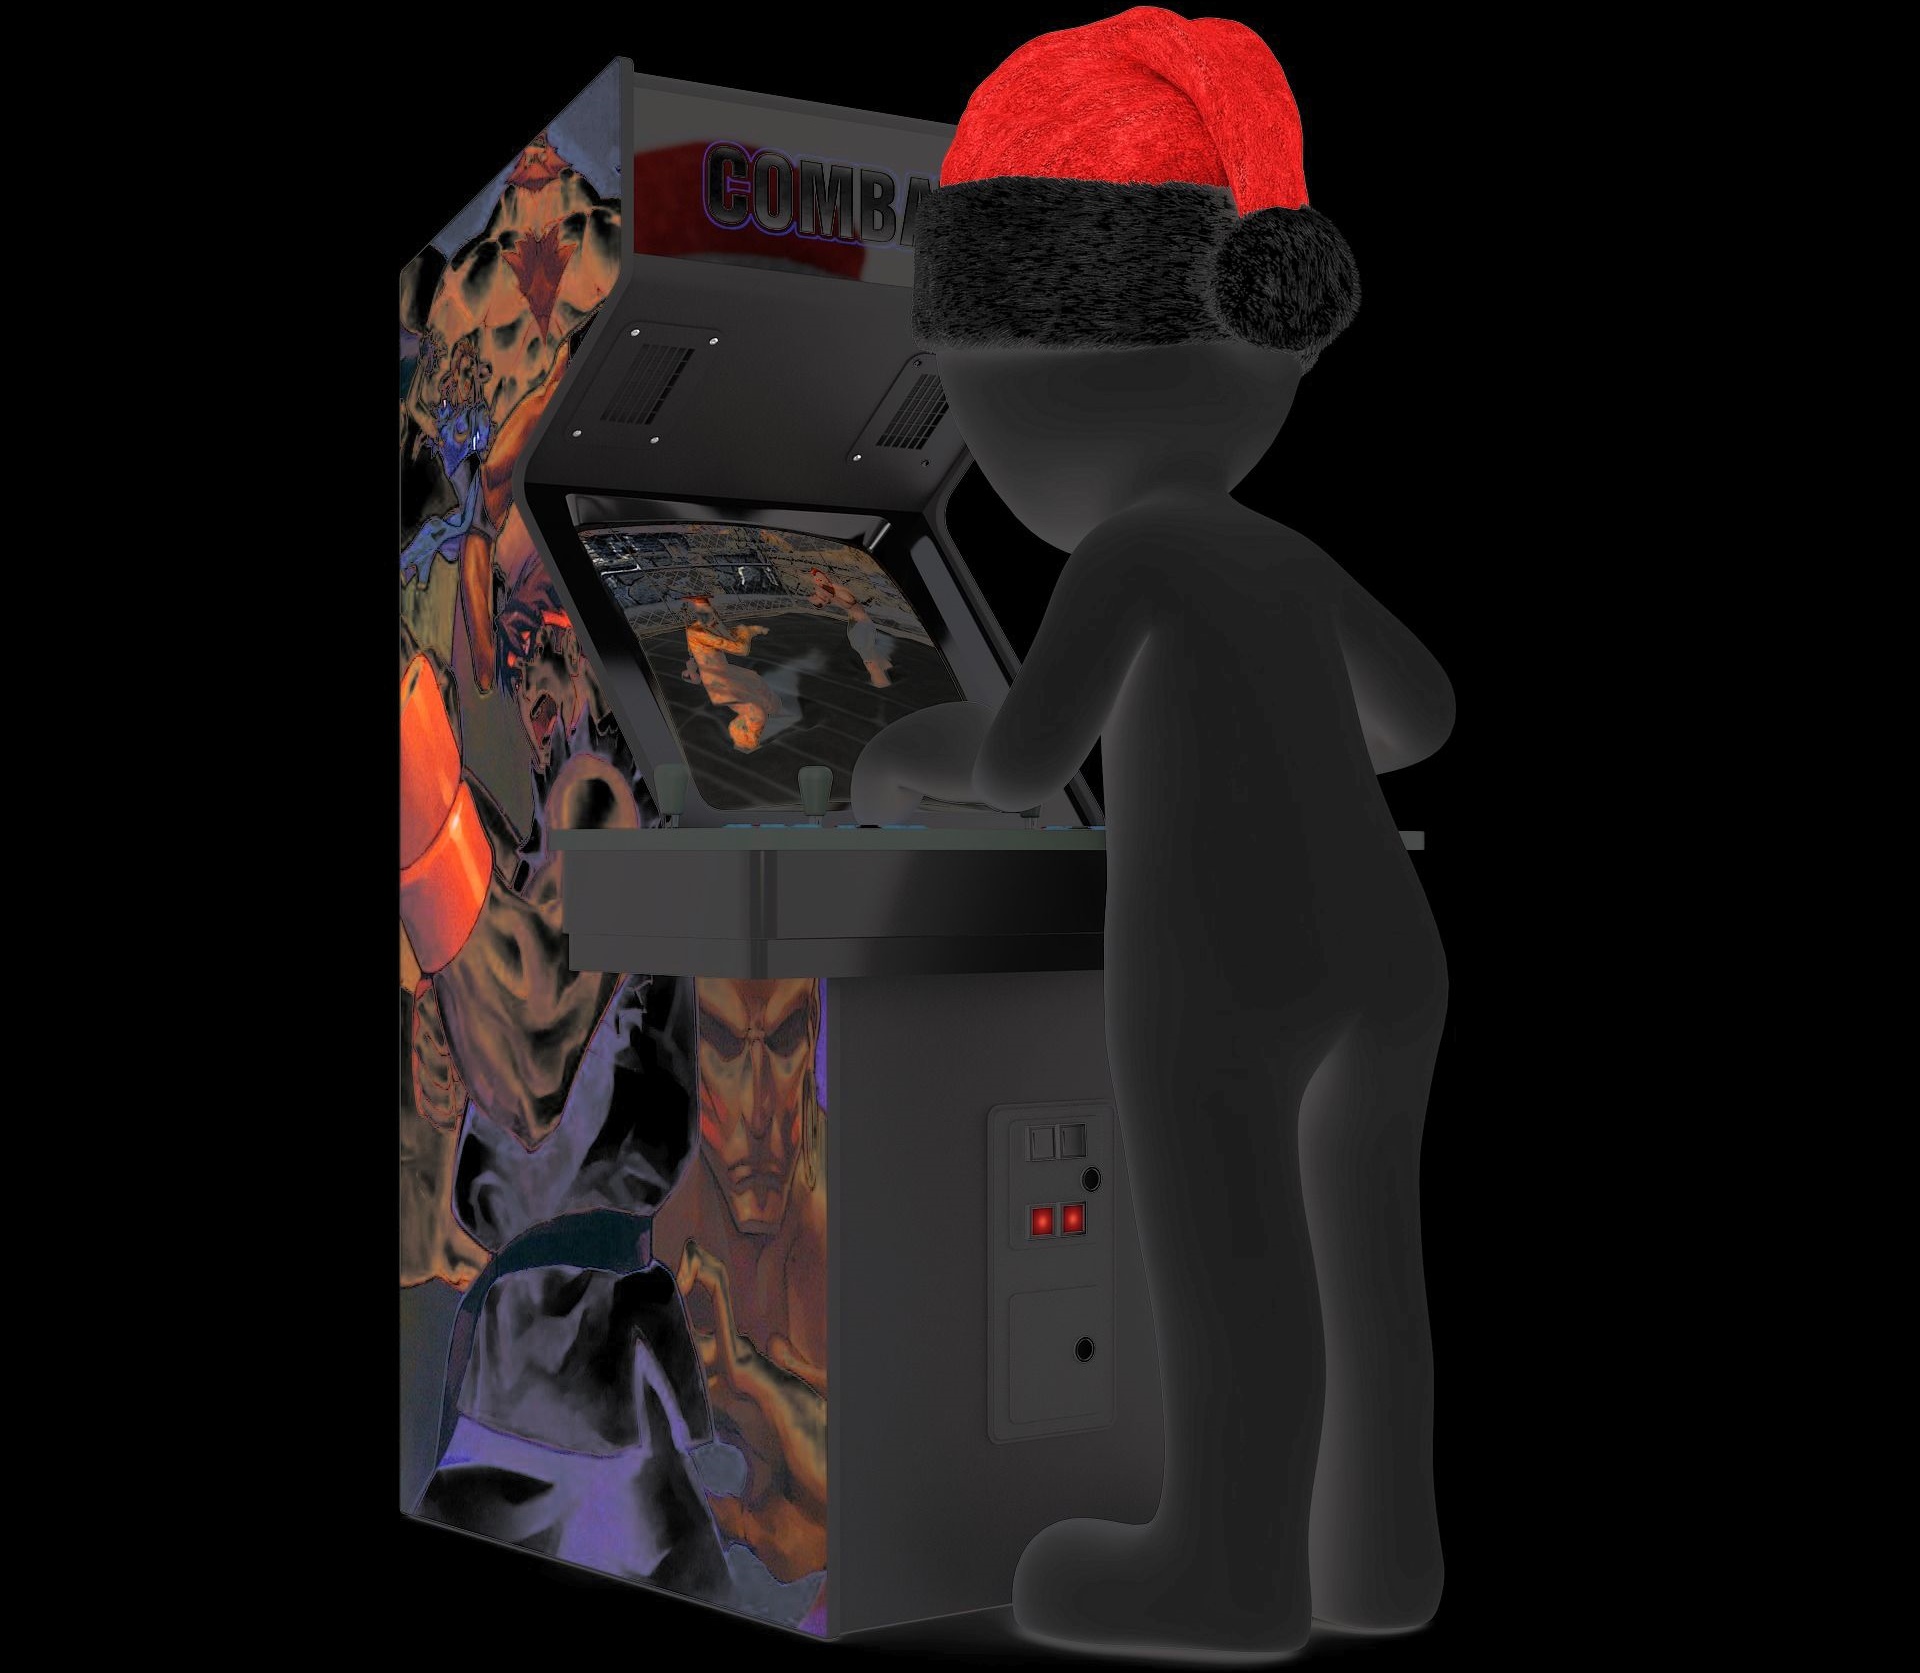 Человек в колпаке Санта-Клауса играет в аркадный автомат